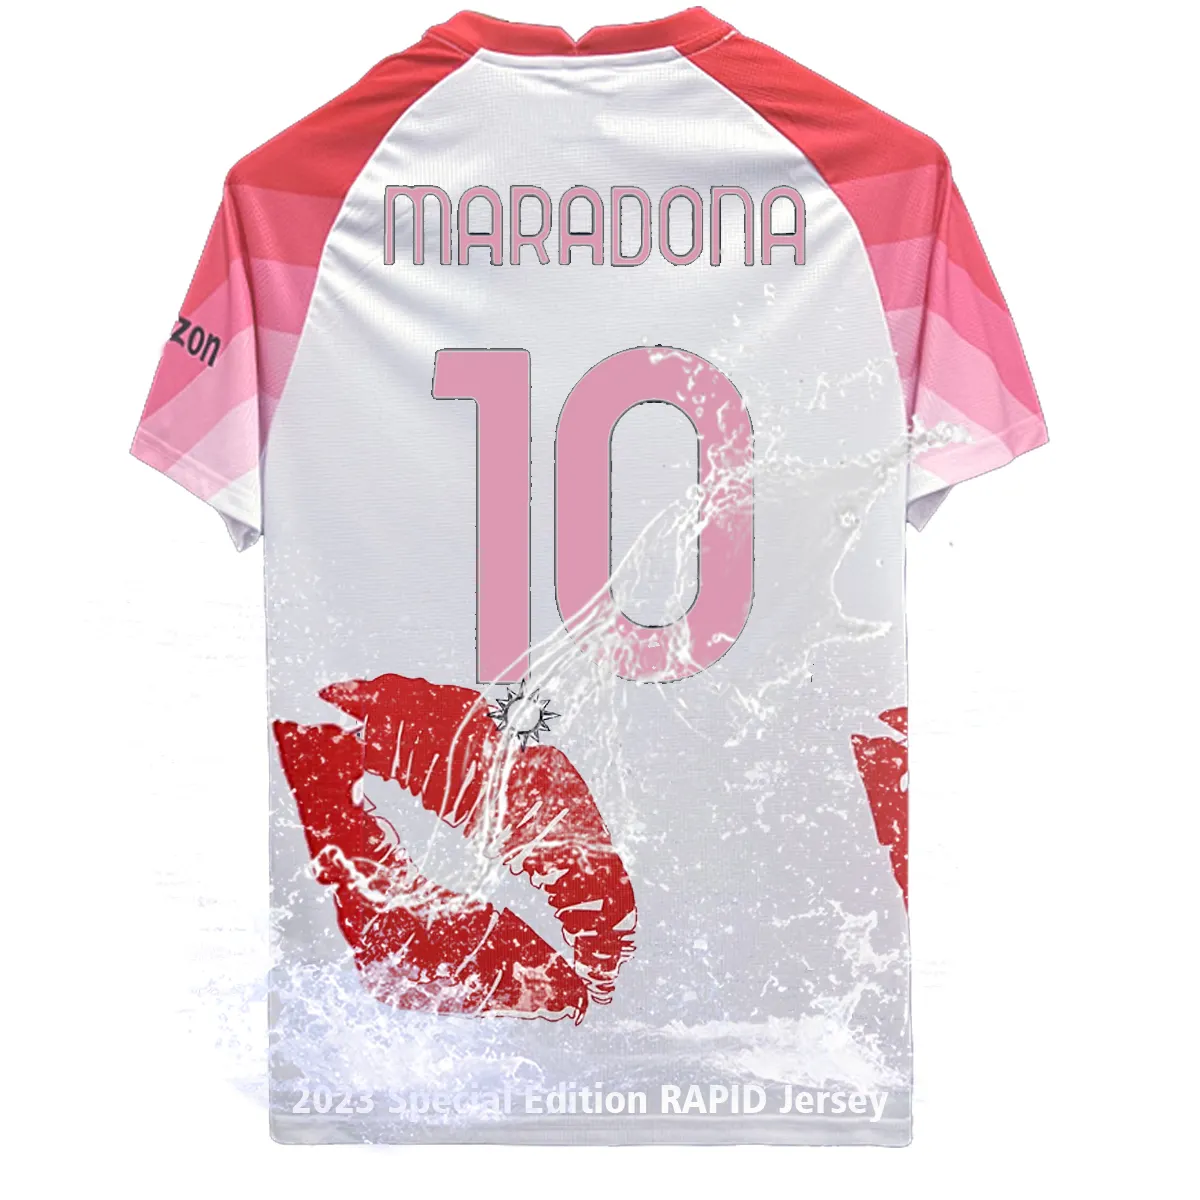 Vendita Online all'ingrosso ultima stagione League Club Premier Football Shirts 23/4 napoli maglia da calcio uniforme speciale rosa e bianca